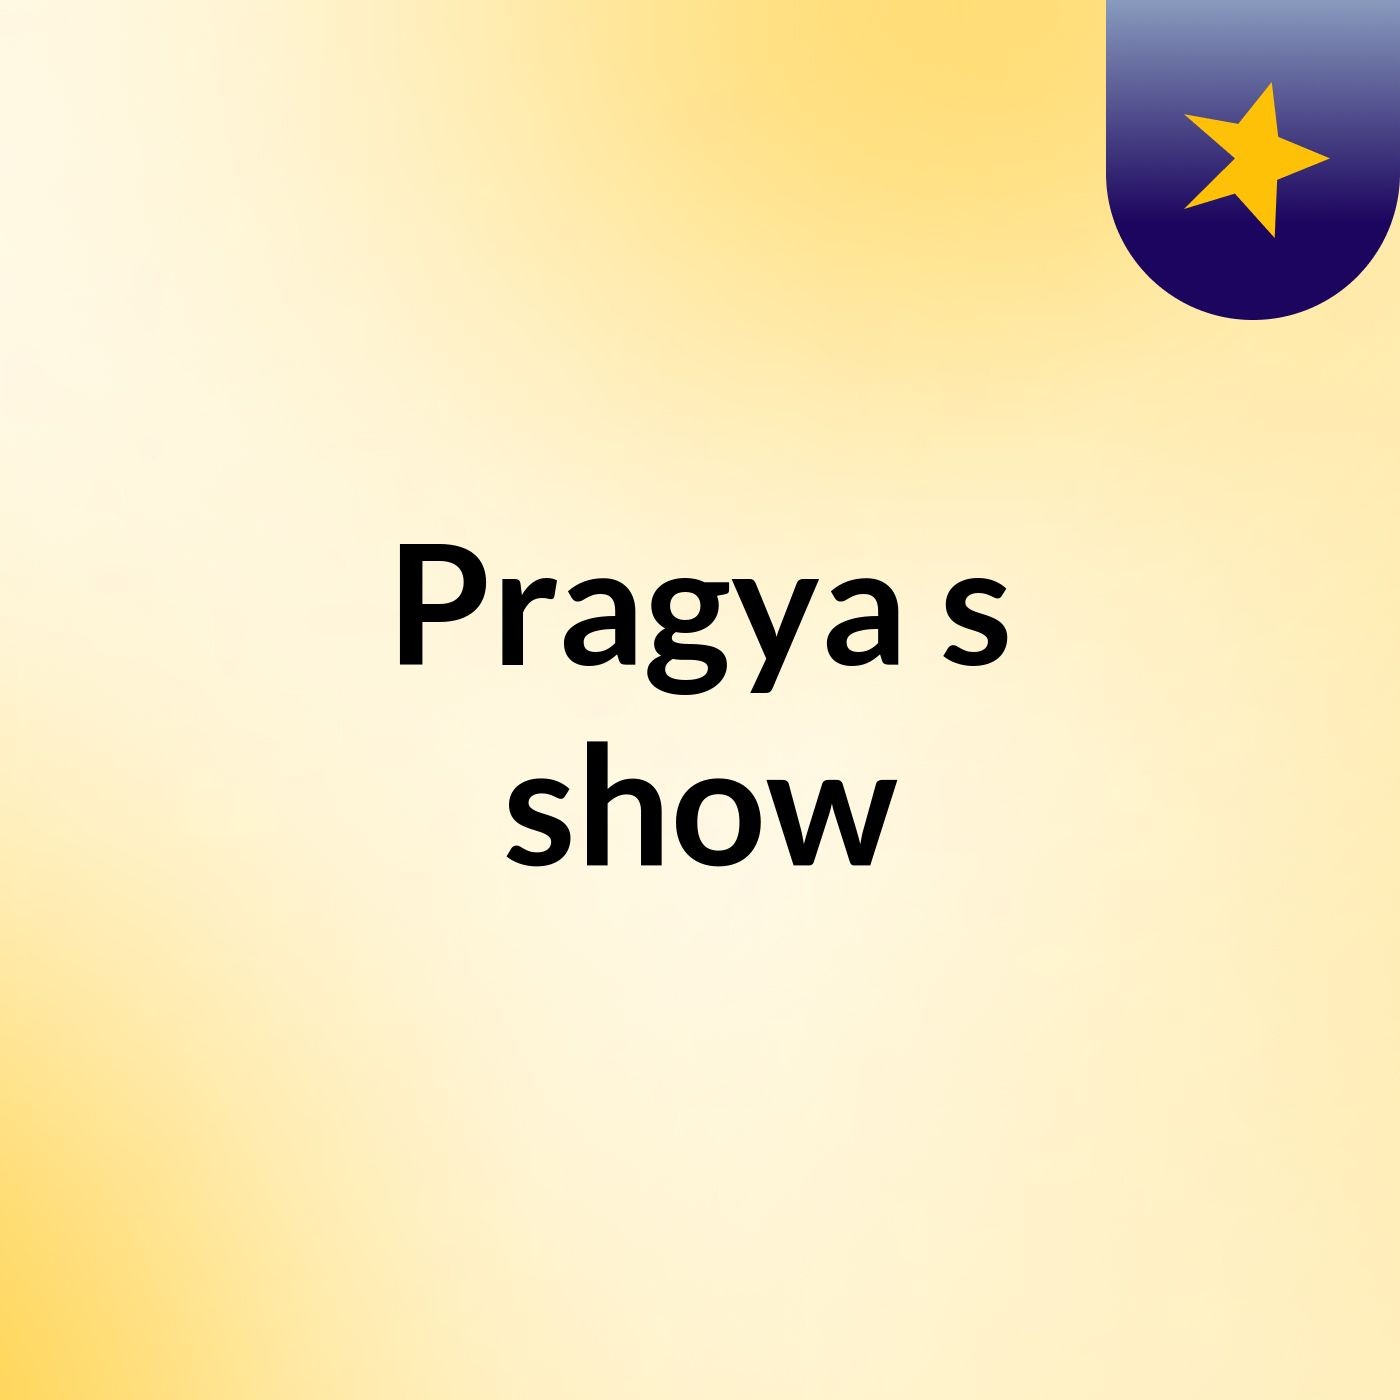 Pragya's show